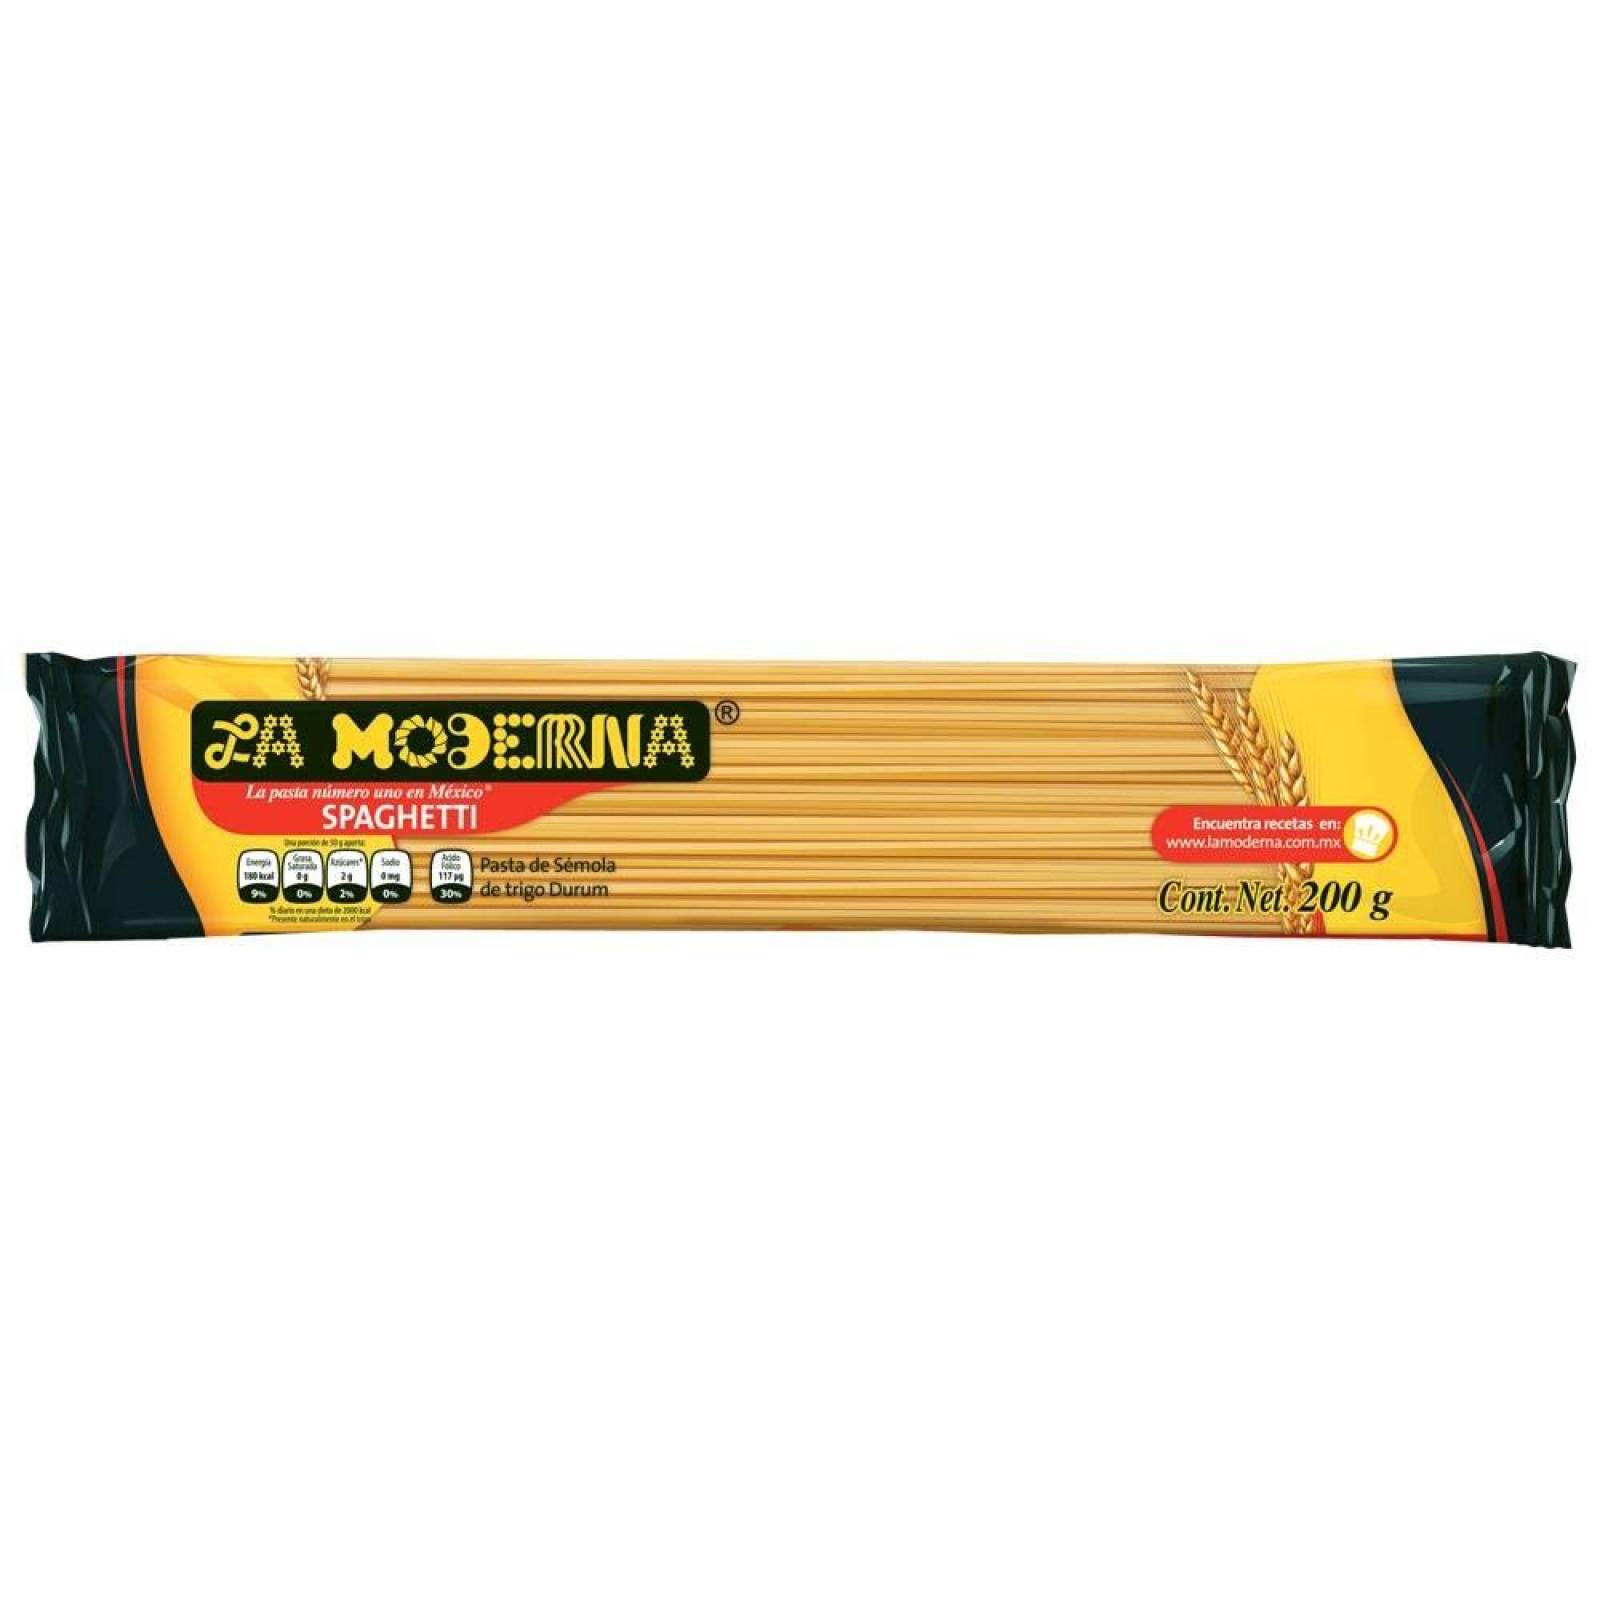 La Moderna Pasta Spaguetti # 1 Paquete 200 G 